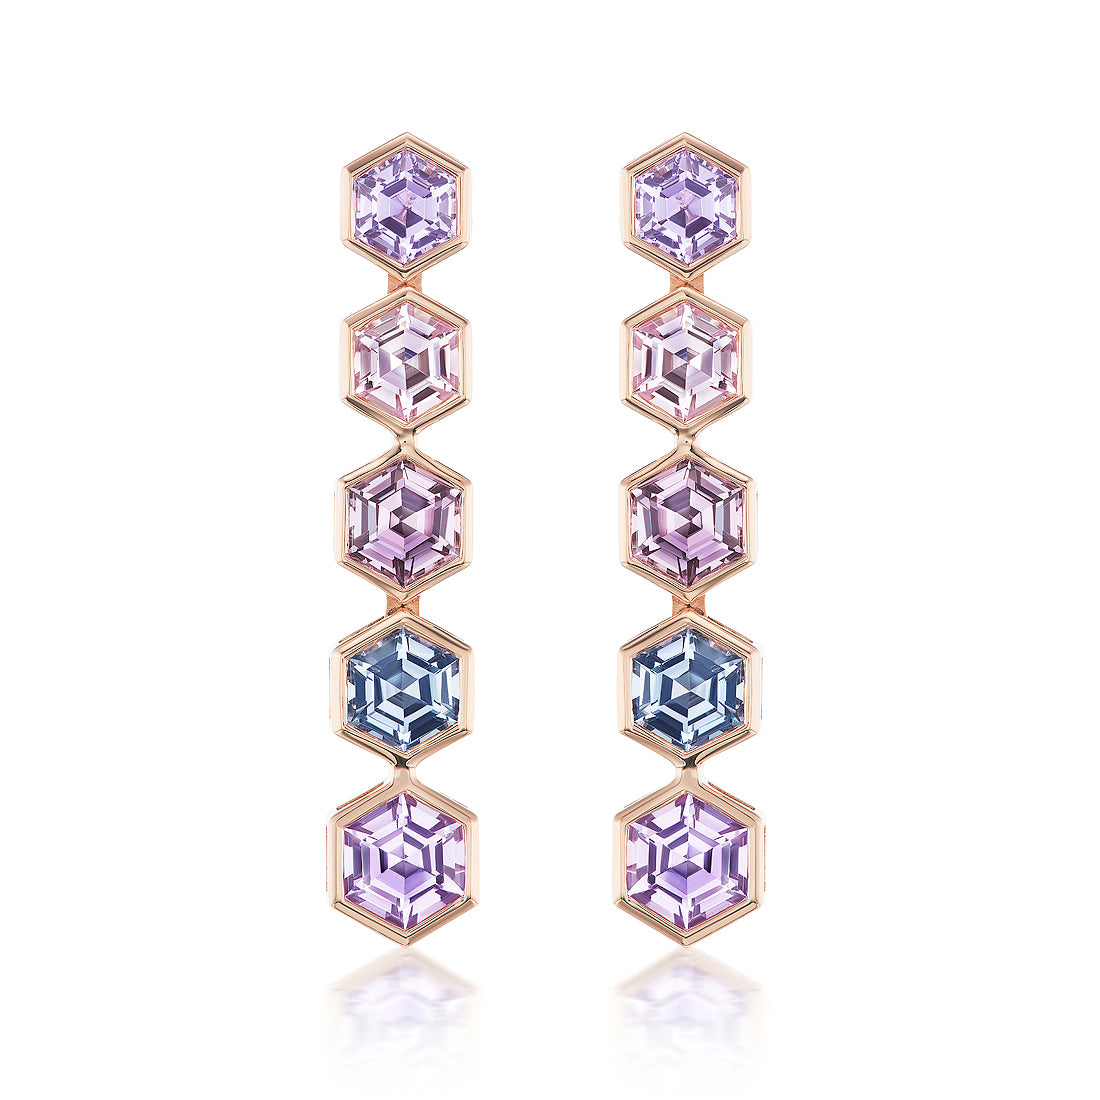 Spectrum Drop Earrings with Bezel Set Multicolor Hexagonal Sapphires